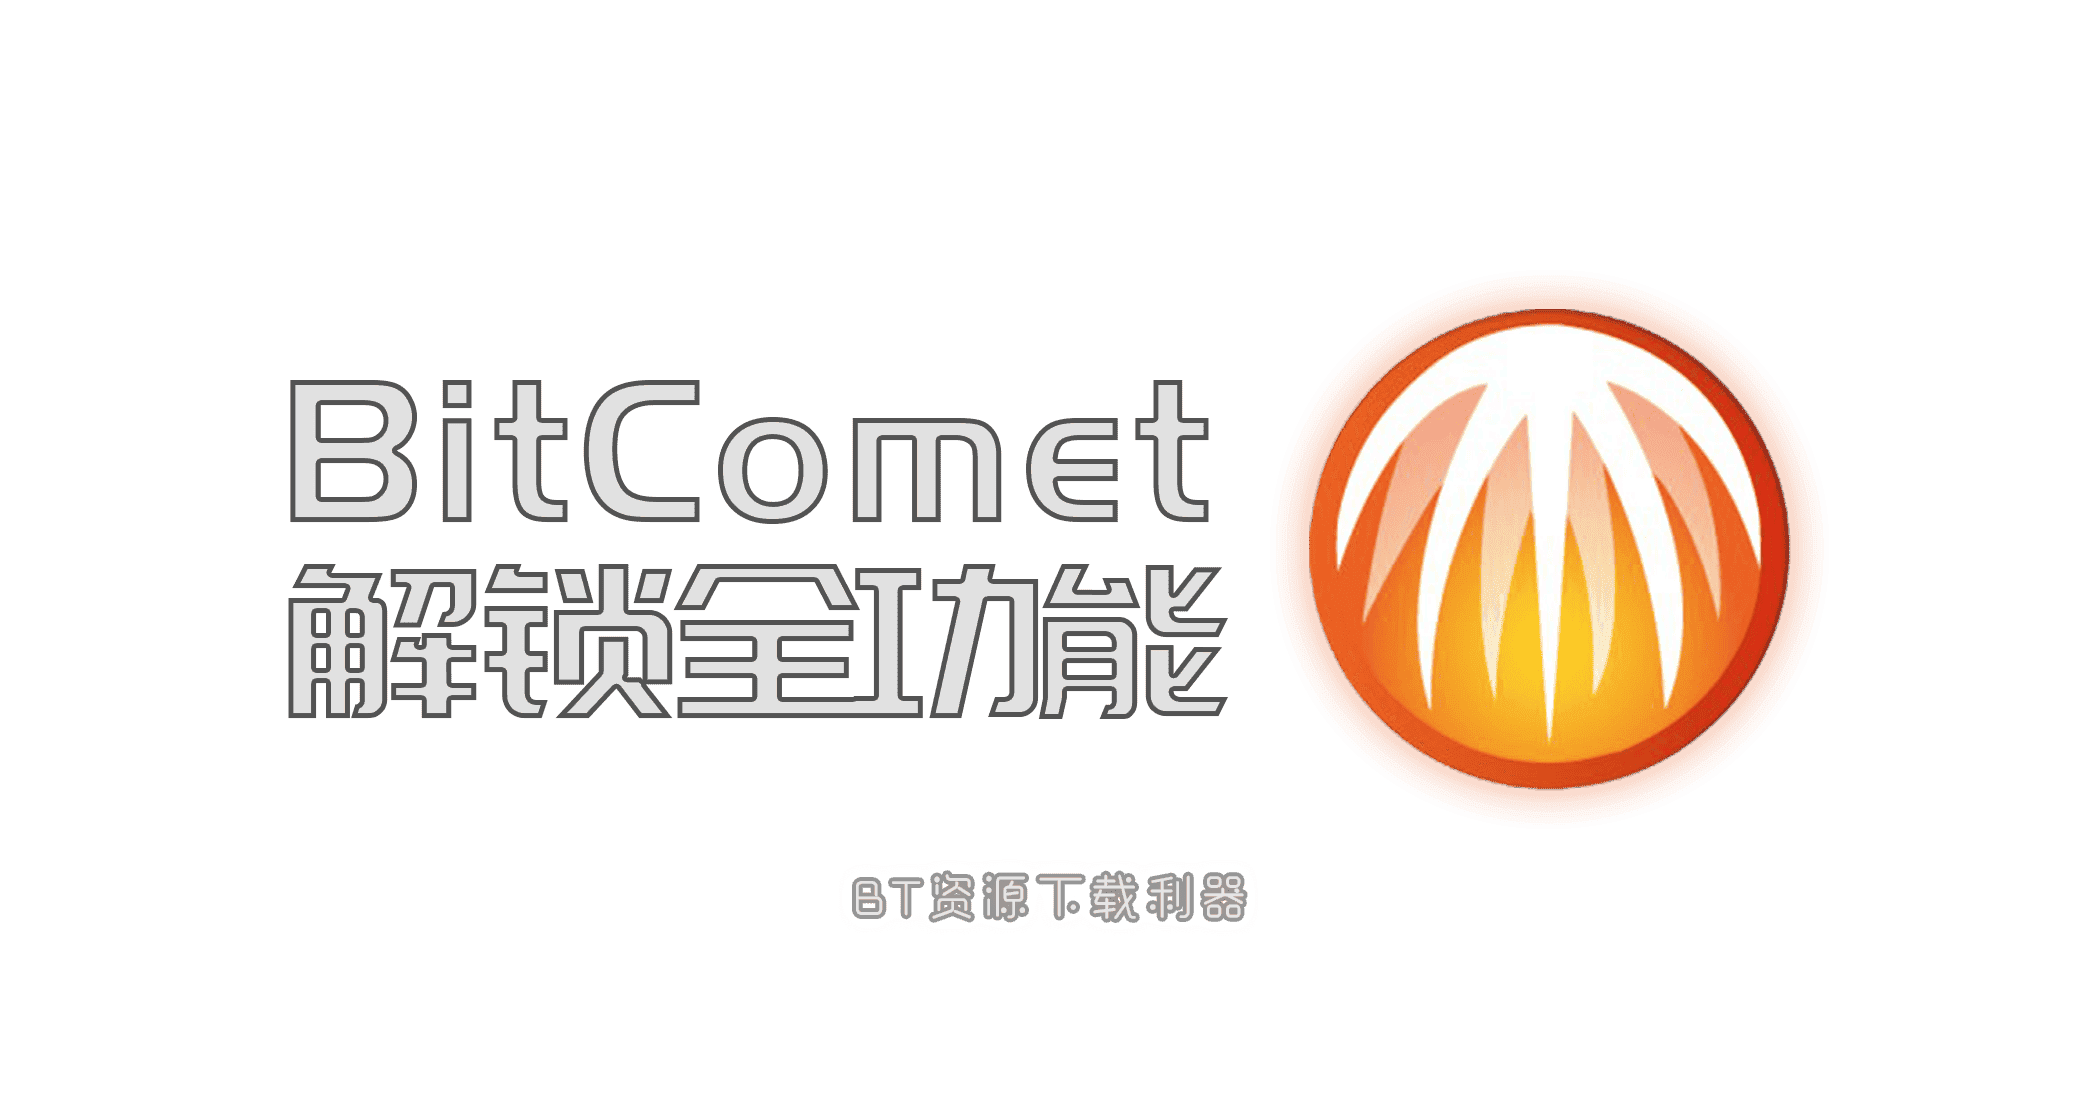 比特彗星 BitComet 解锁全功能-JACK小桔子的小屋